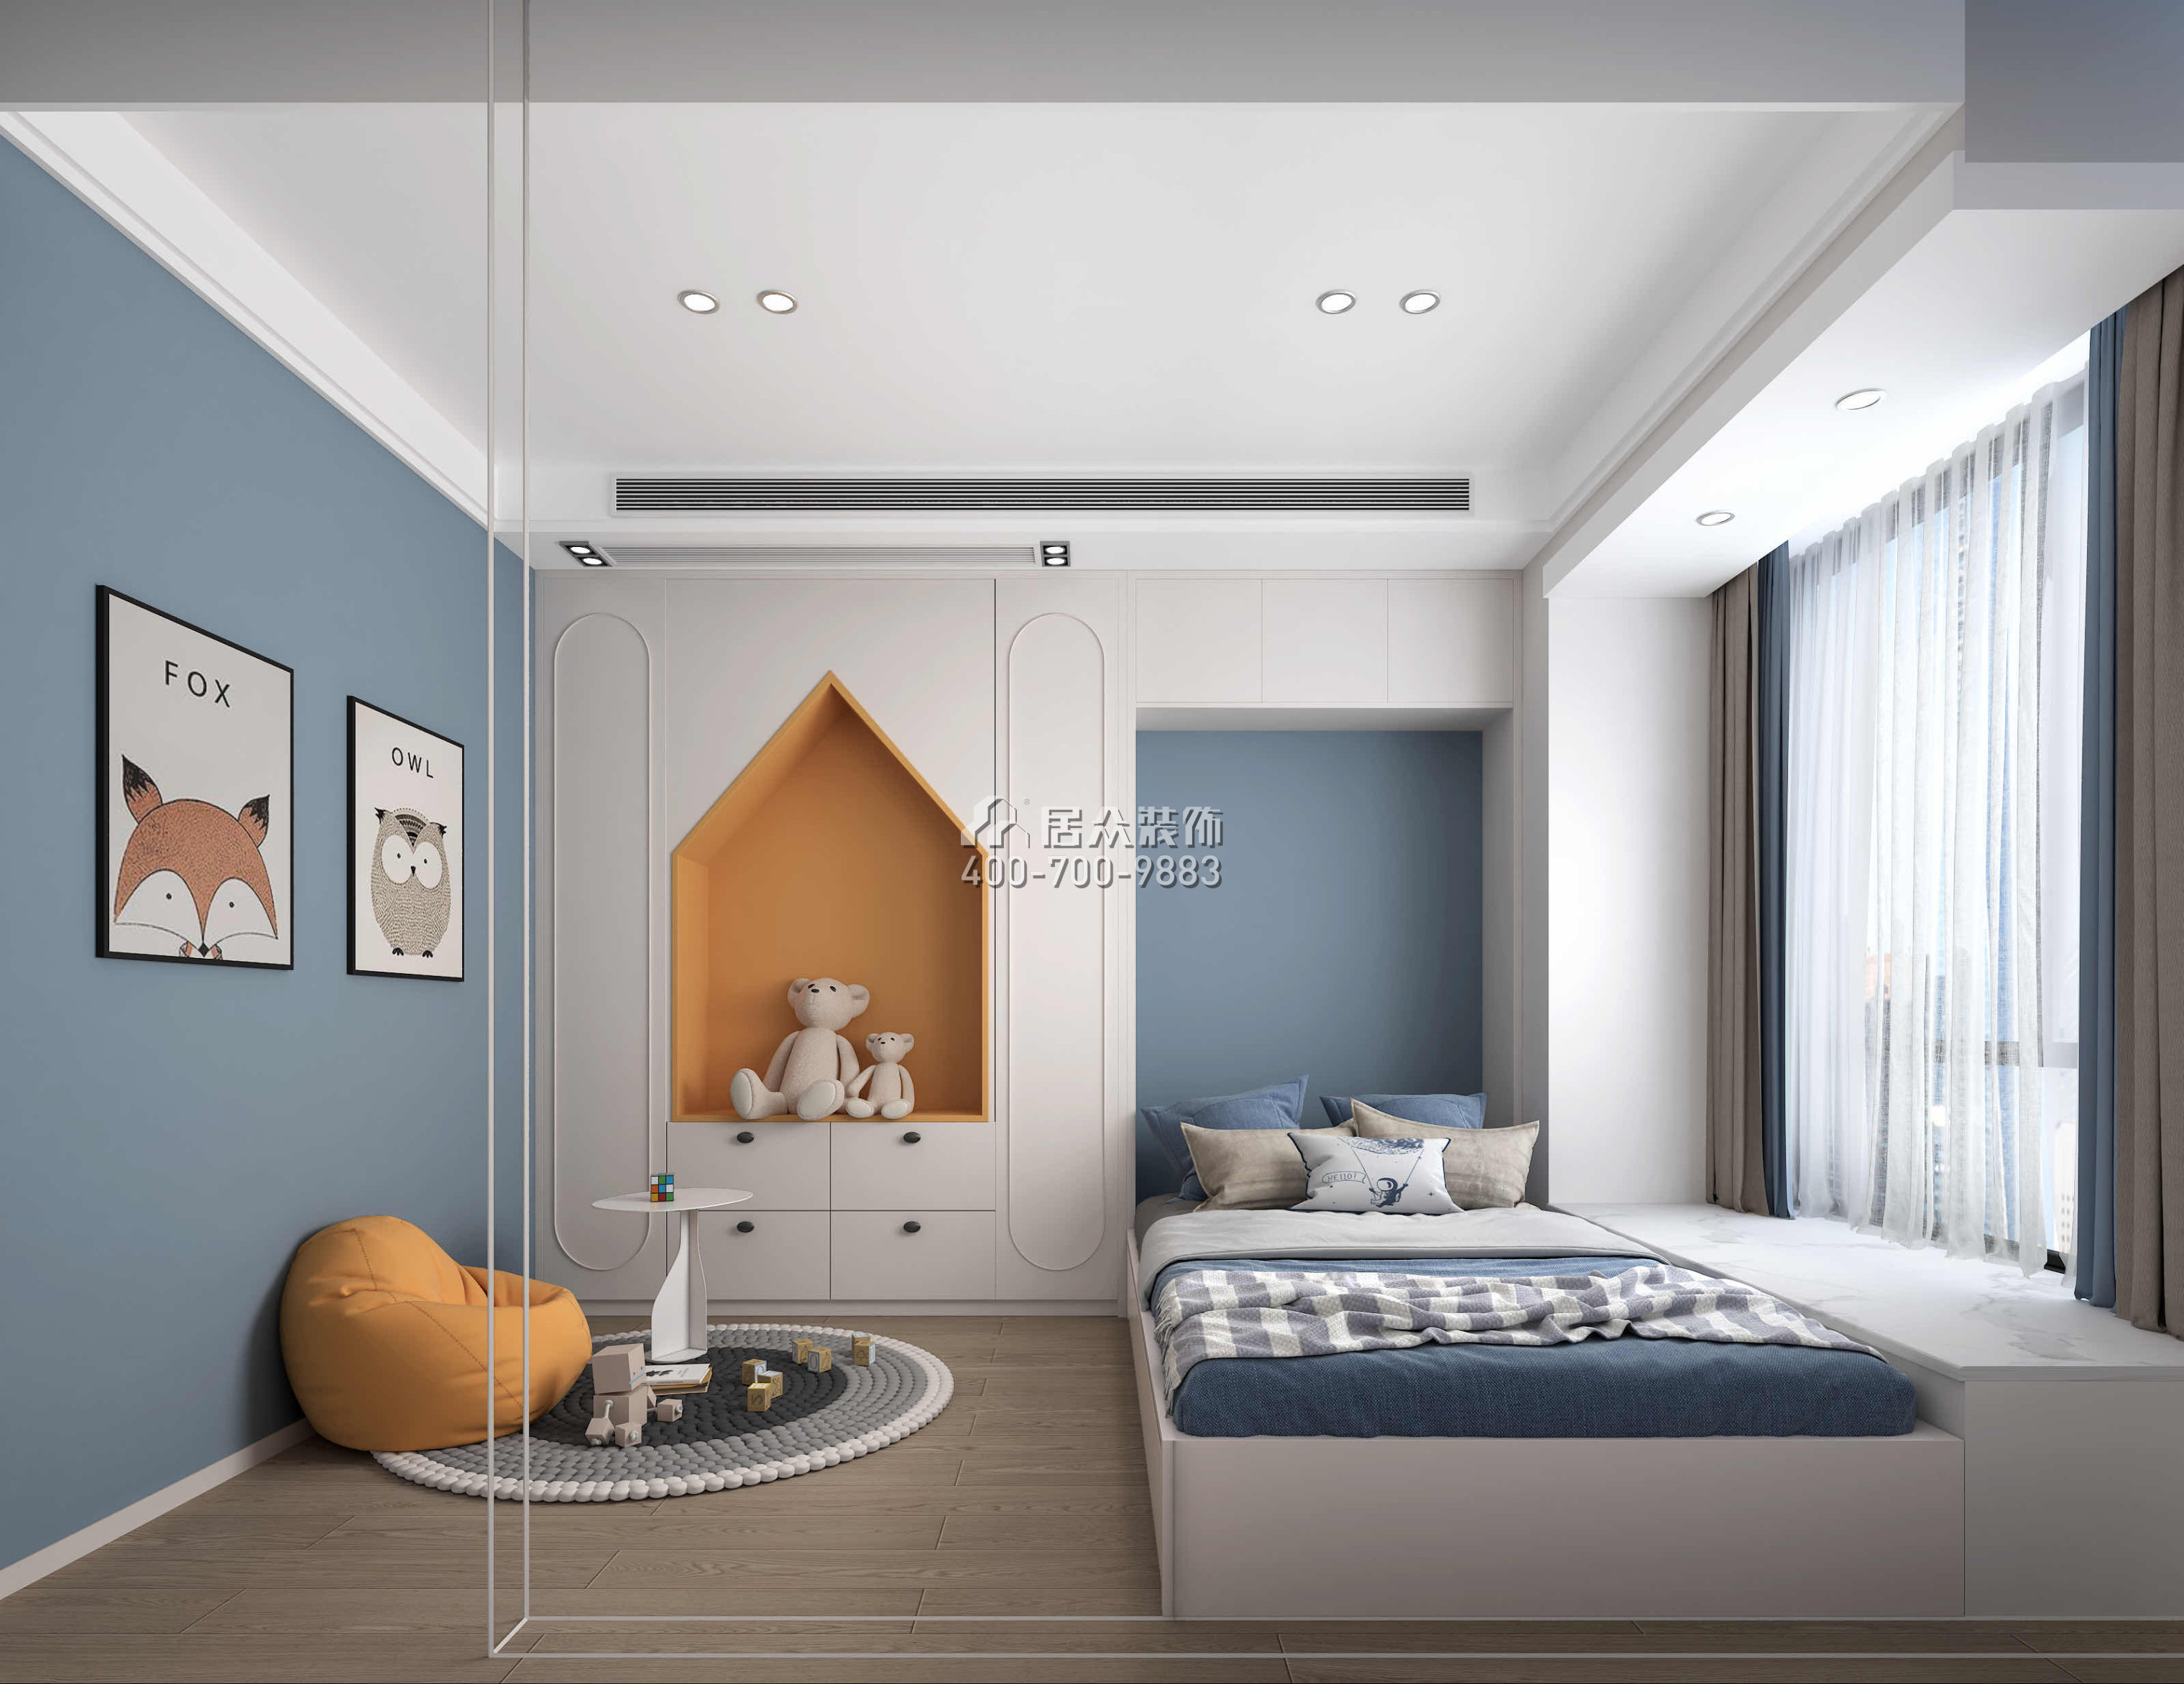 壹方中心175平方米現代簡約風格平層戶型臥室裝修效果圖